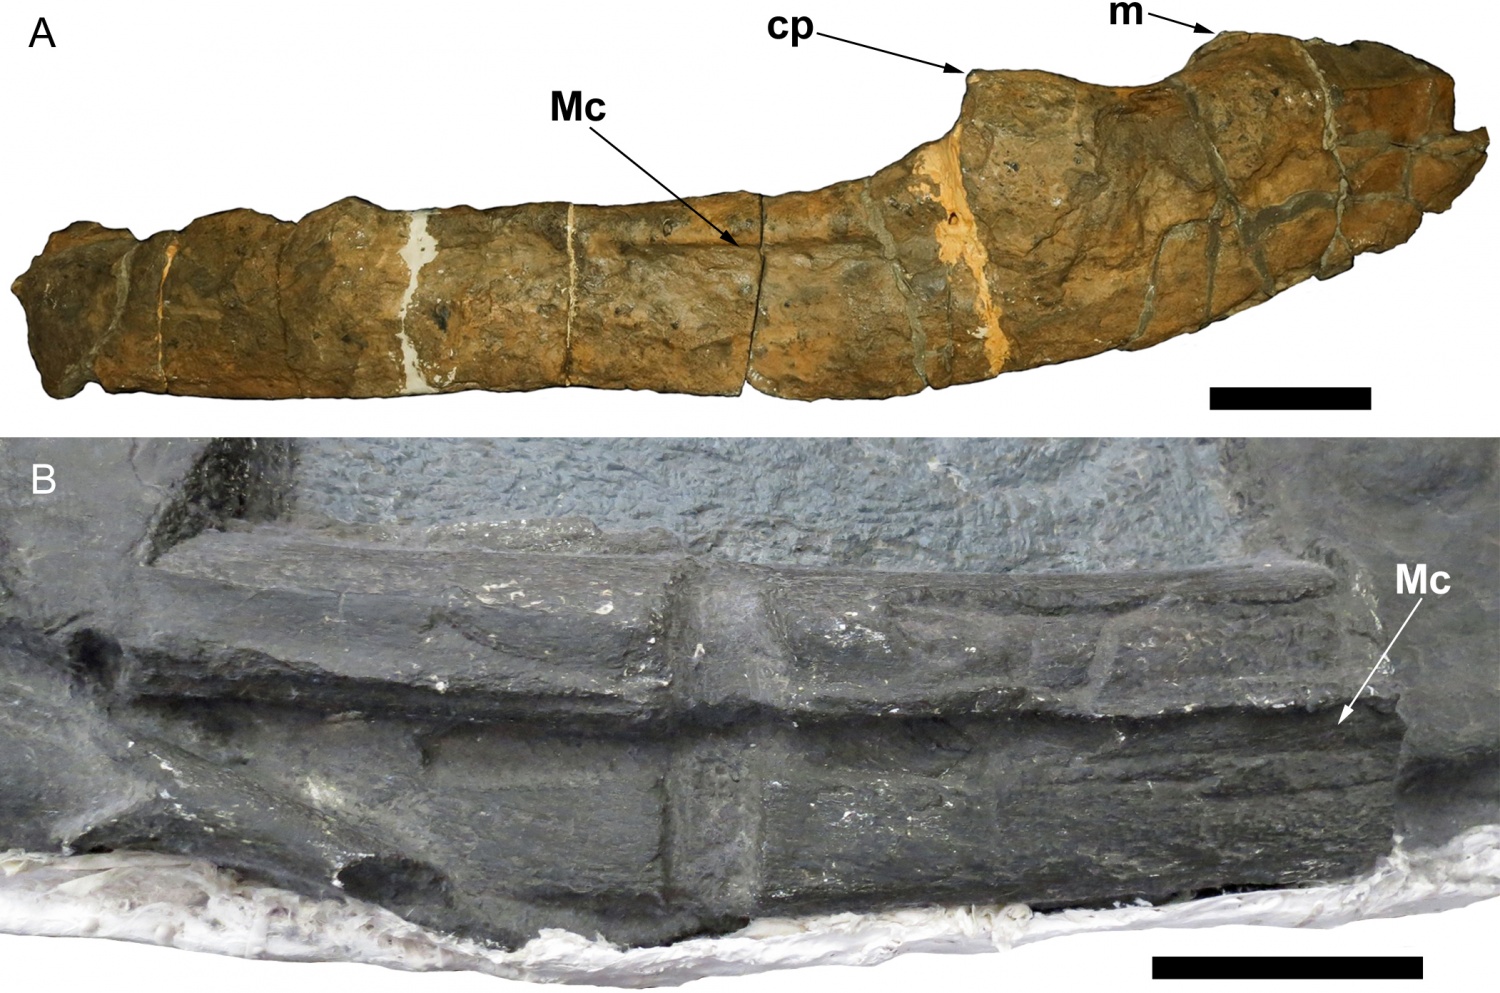 ichthyosaur fossils 